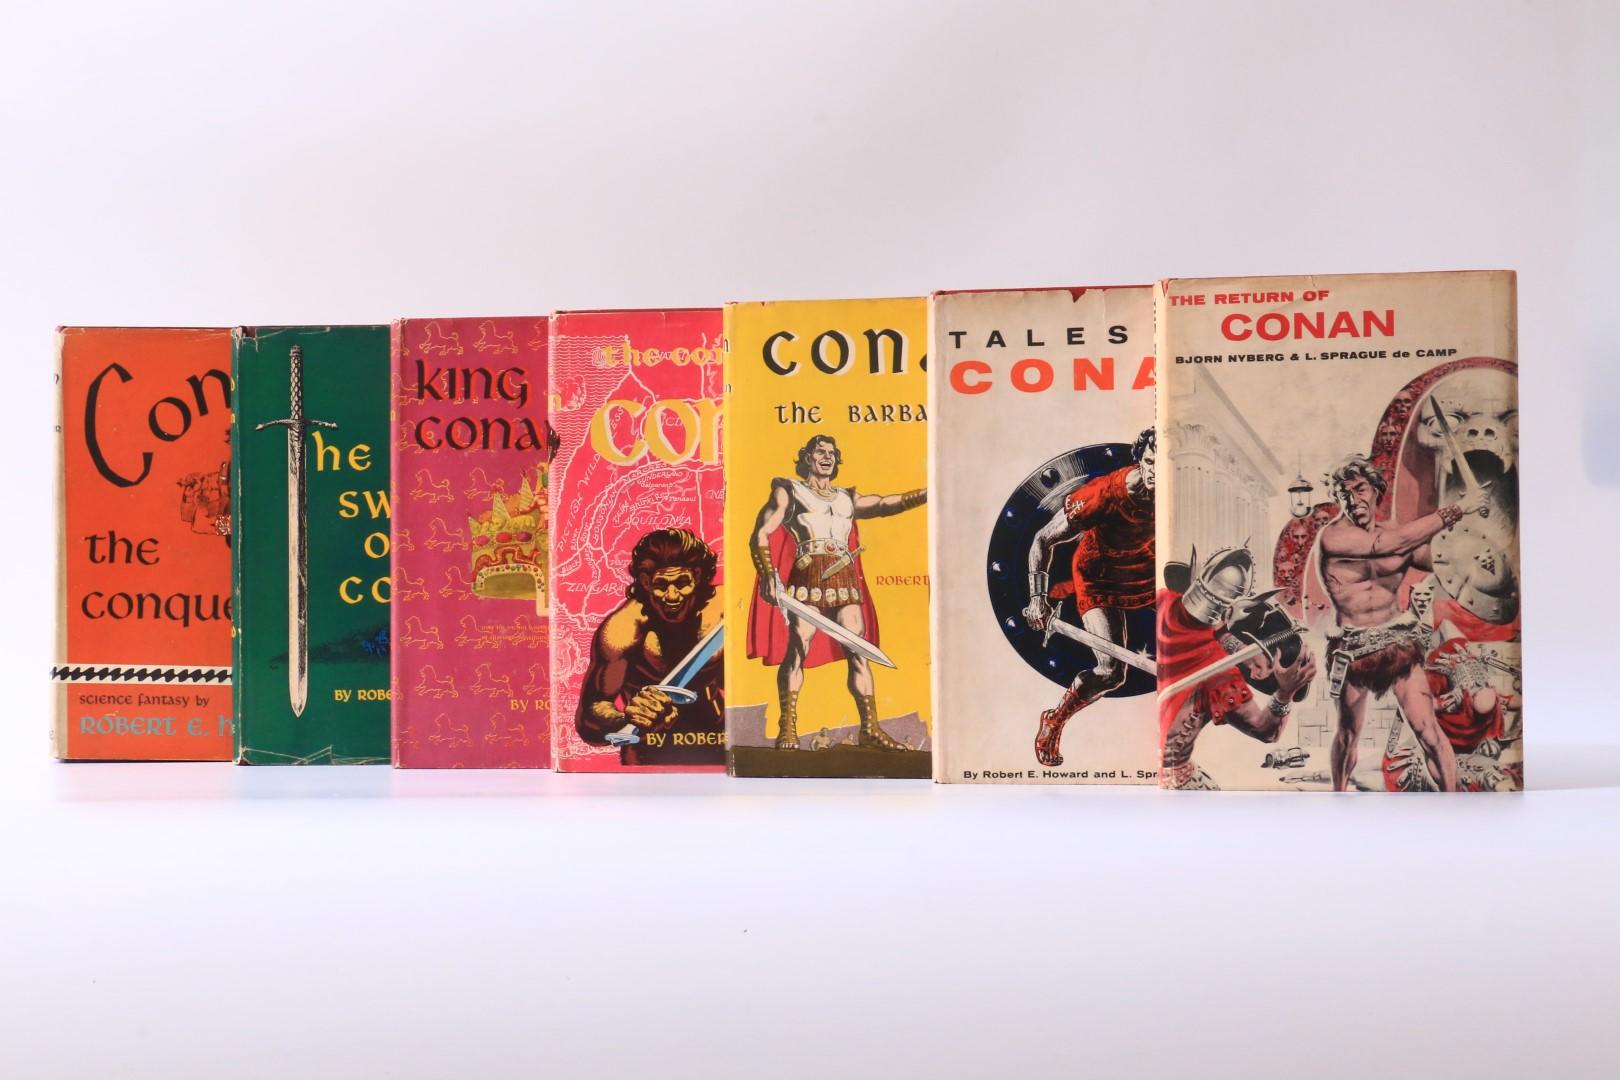 Robert E. Howard, Bjorn Nyberg and L. Sprague De Camp. - The Conan Books [comprising] Conan the Conqueror, The Sword of Conan, The Coming of Conan, King Conan, Conan the Barbarian, Tales of Conan, and The Return of Conan. - Gnome Press, 1950-1957, First Edition.